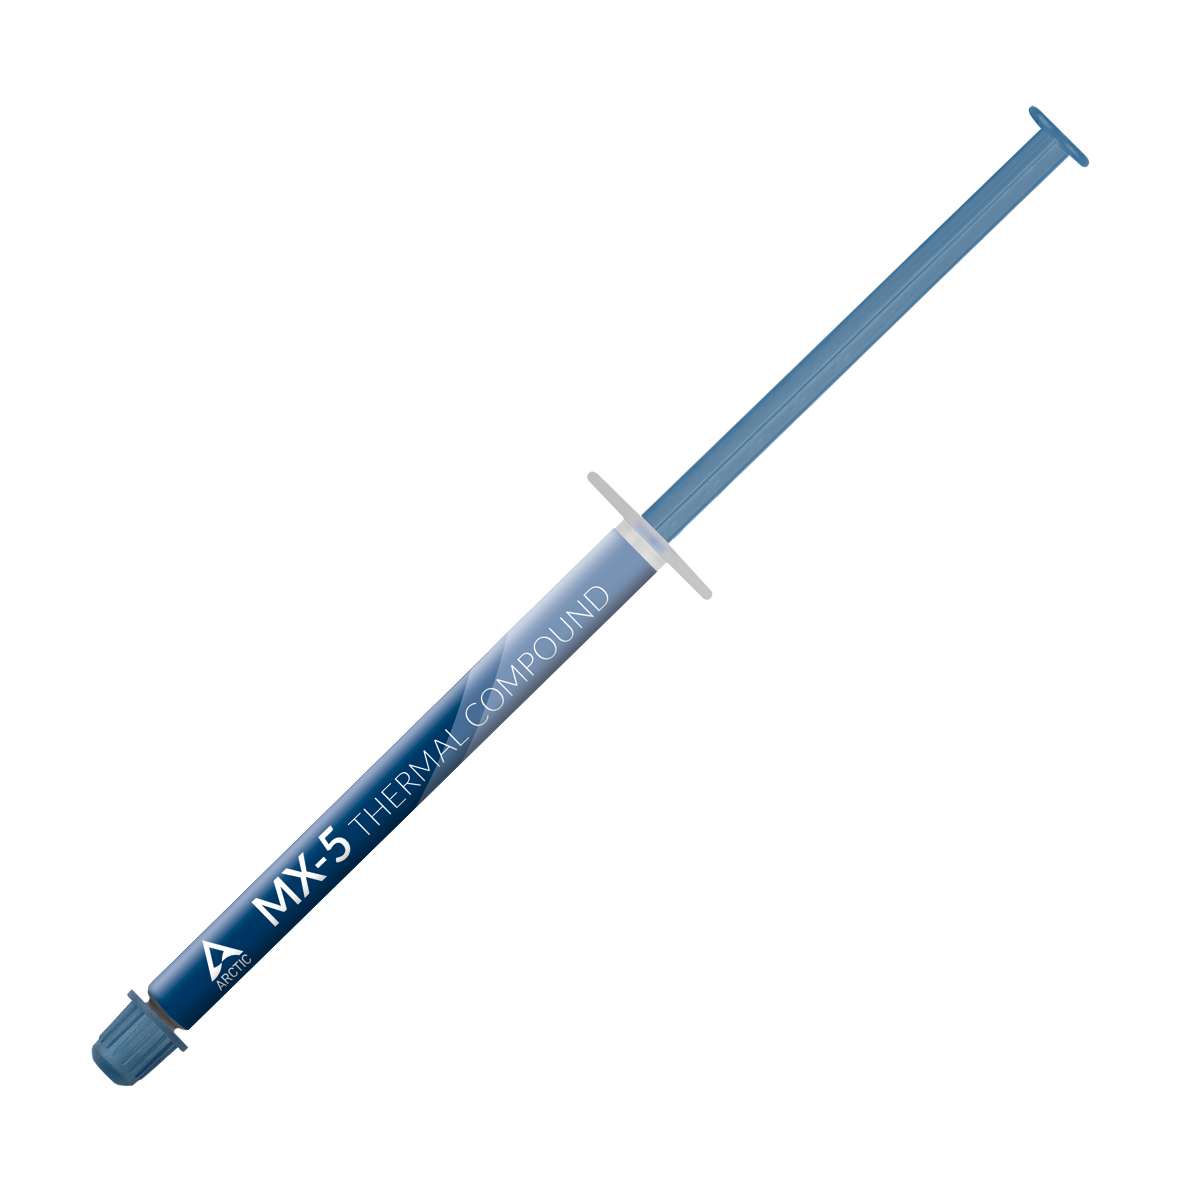 Arctic MX-5 High Performance Wärmeleitpaste - Wärmeleitpaste - 3,2 g/cm³ - Blau - -40 - 180 °C - 2 g - 12 mm